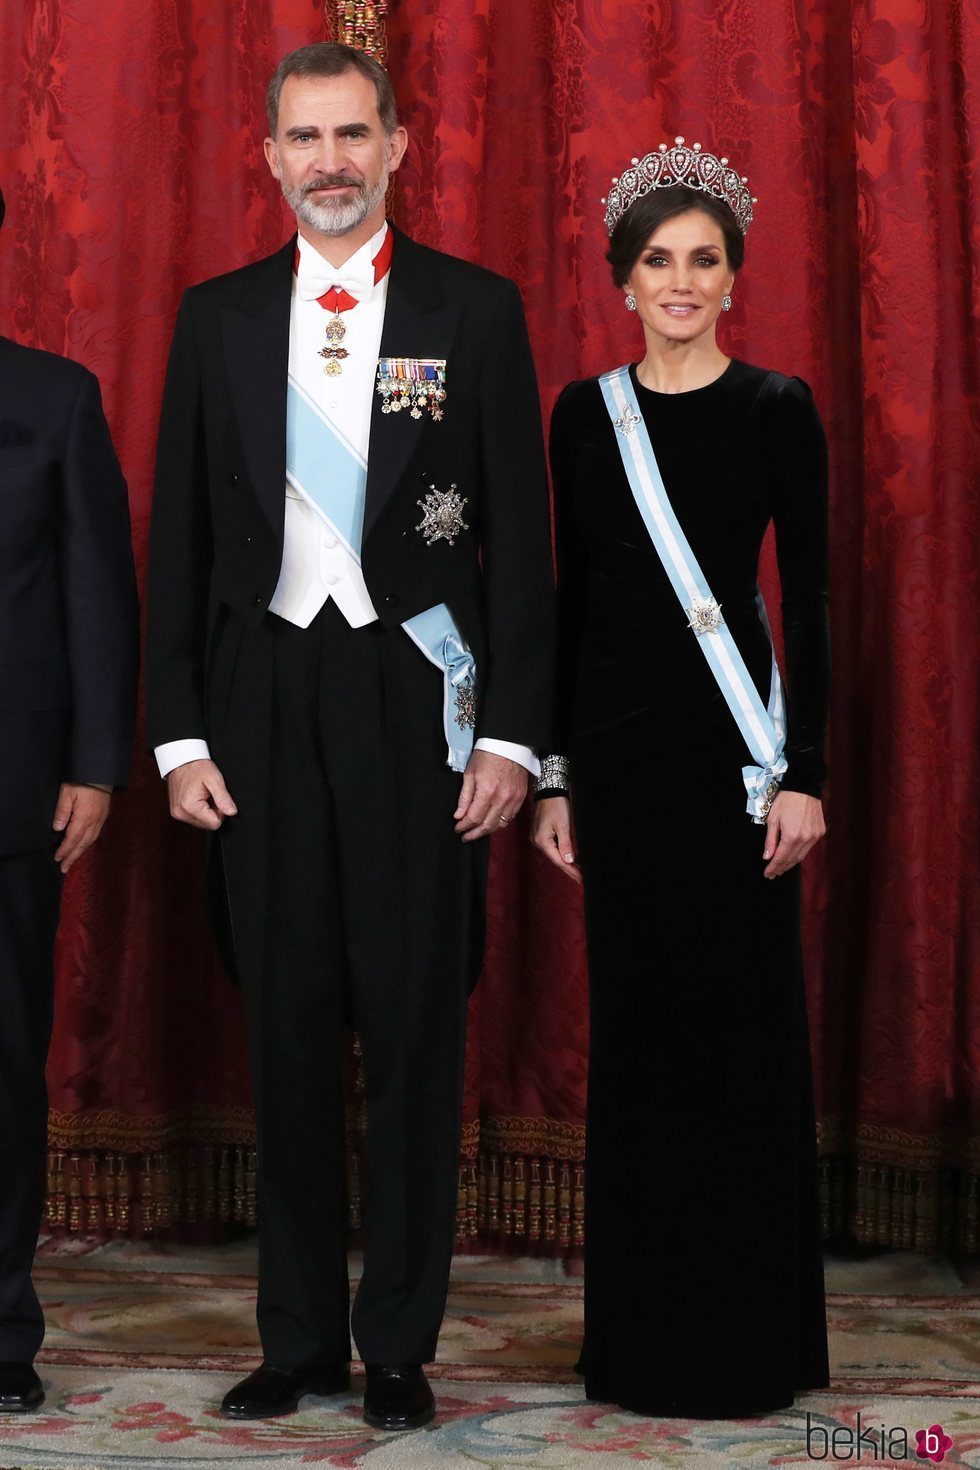 Los Reyes Felipe y Letizia en la cena de gala al Presidente de China